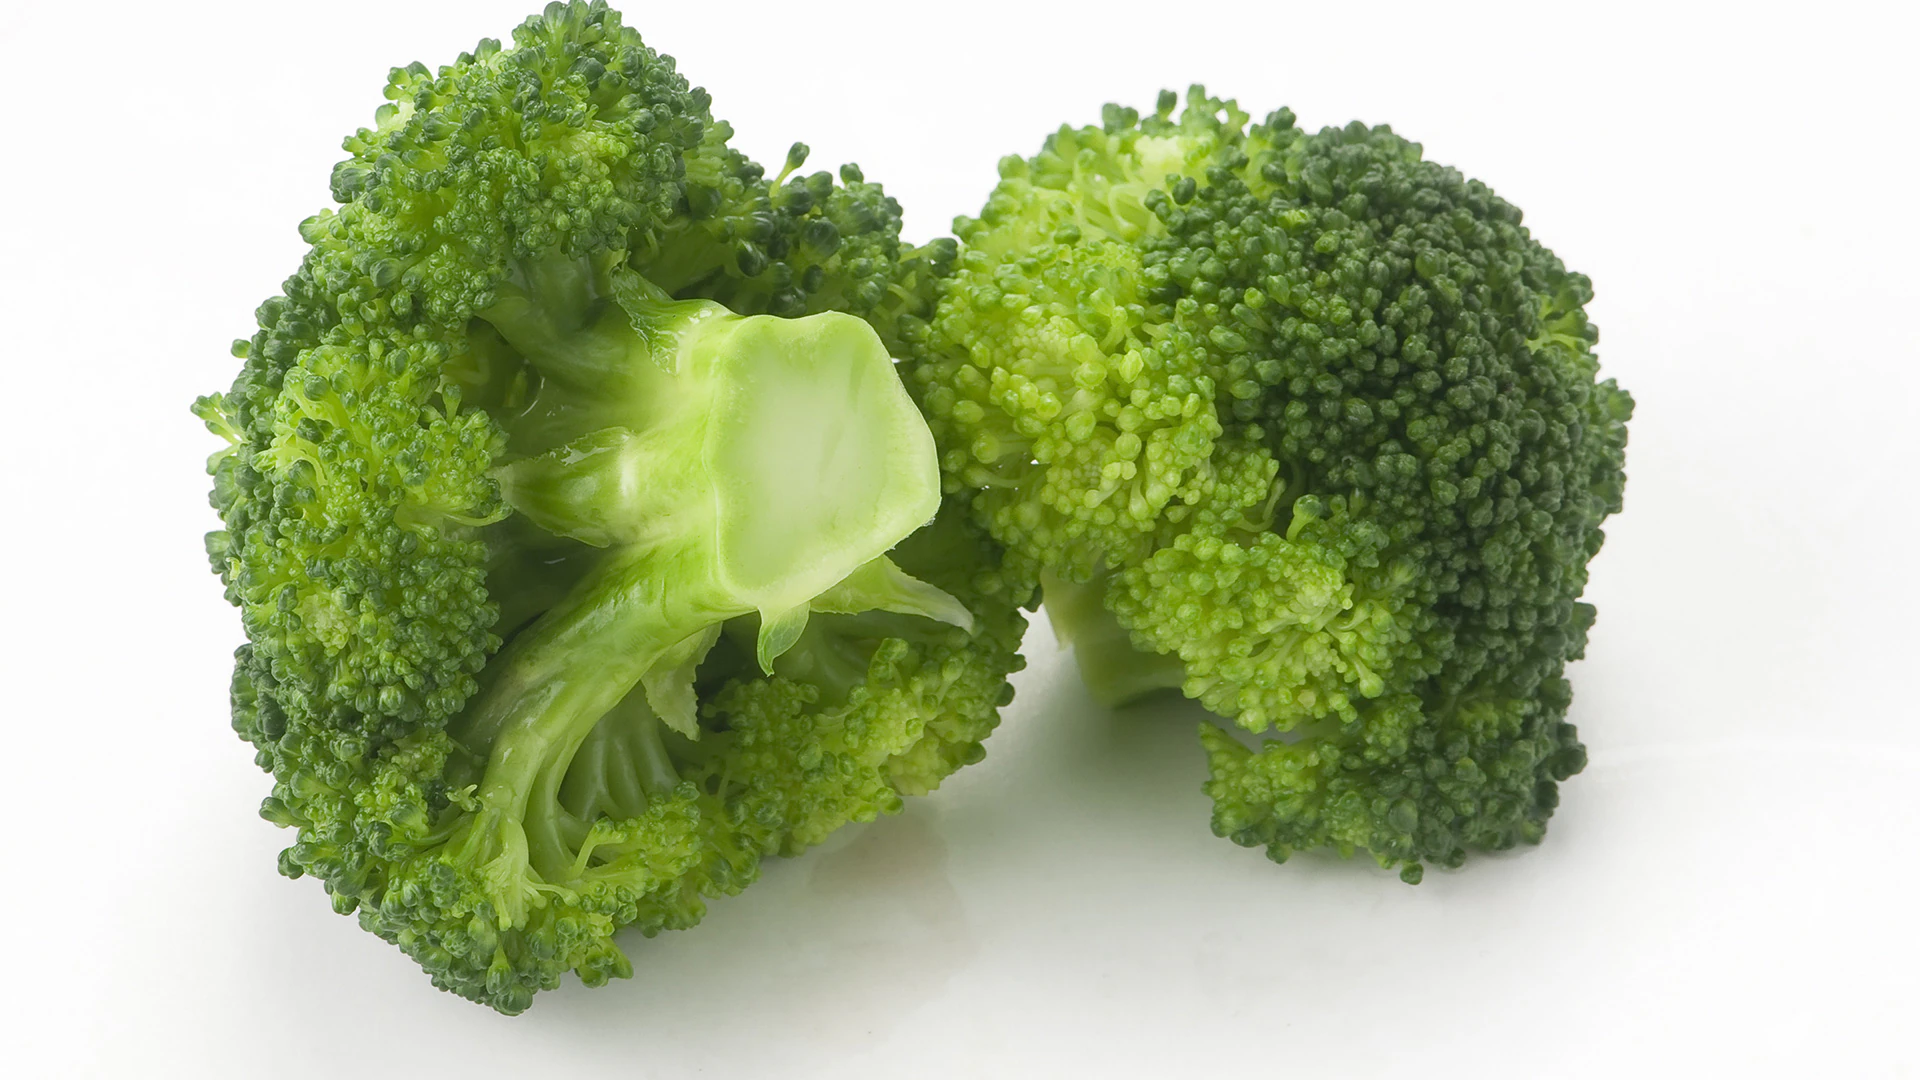 14 recetas con brócoli fáciles, ricas y nutritivas | Gurmé